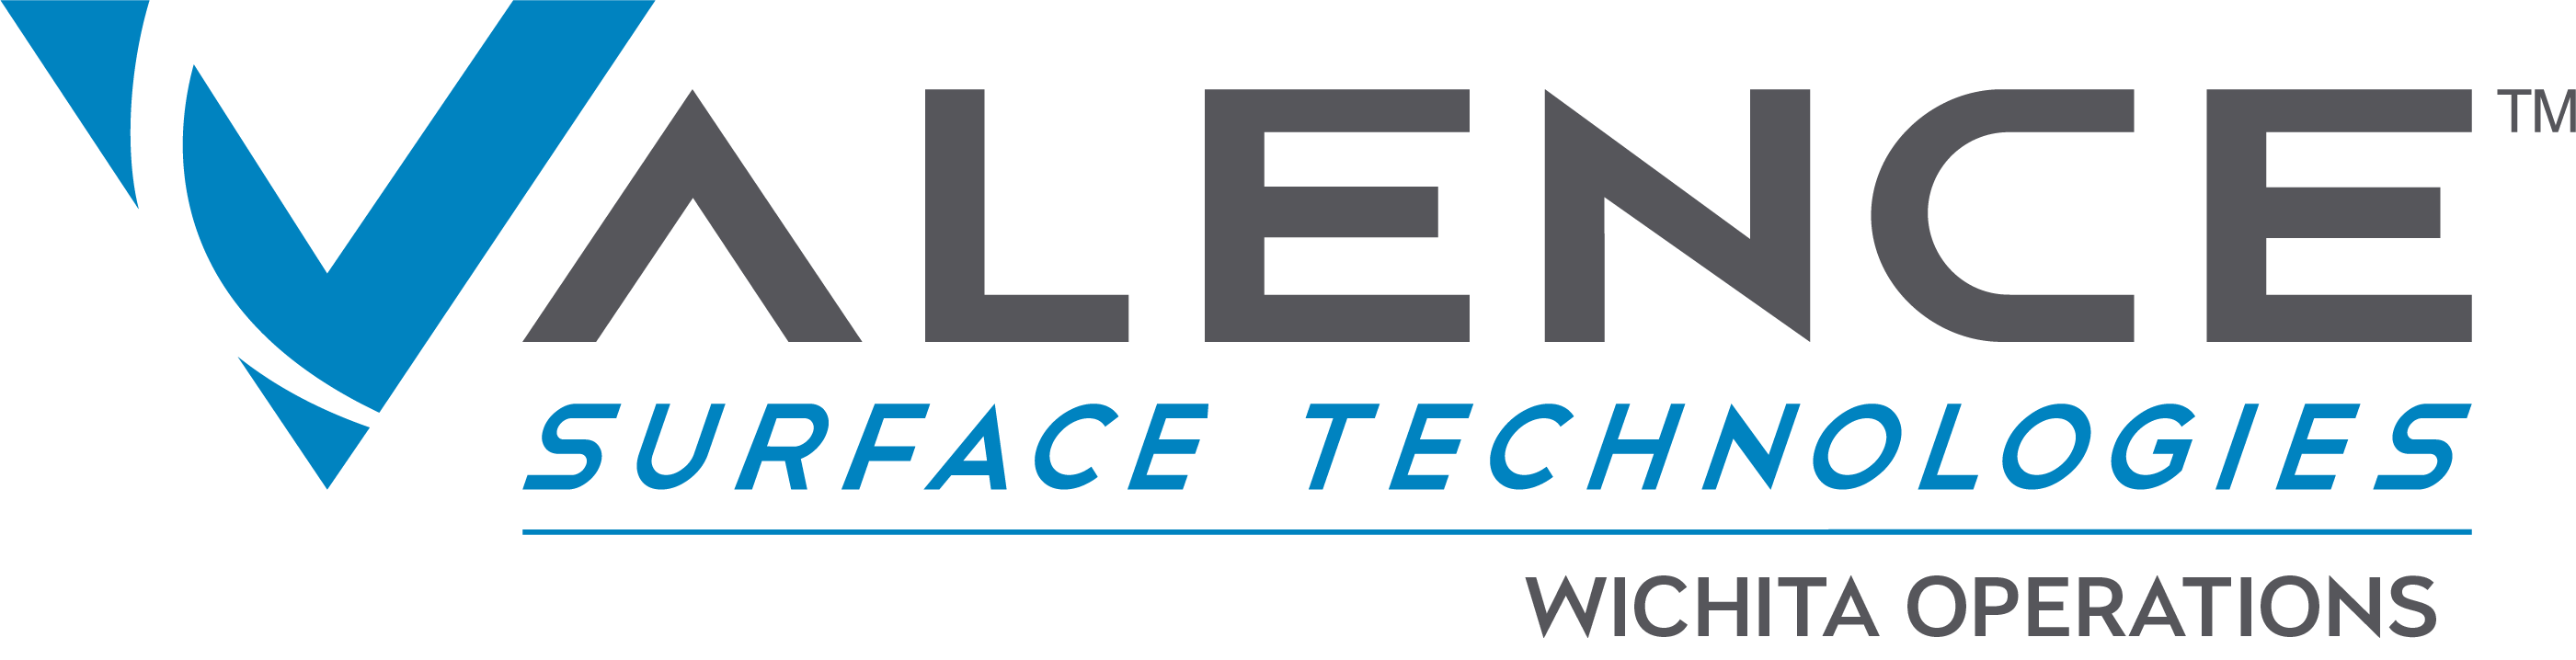 Valence Surface Technologies Wichita logo